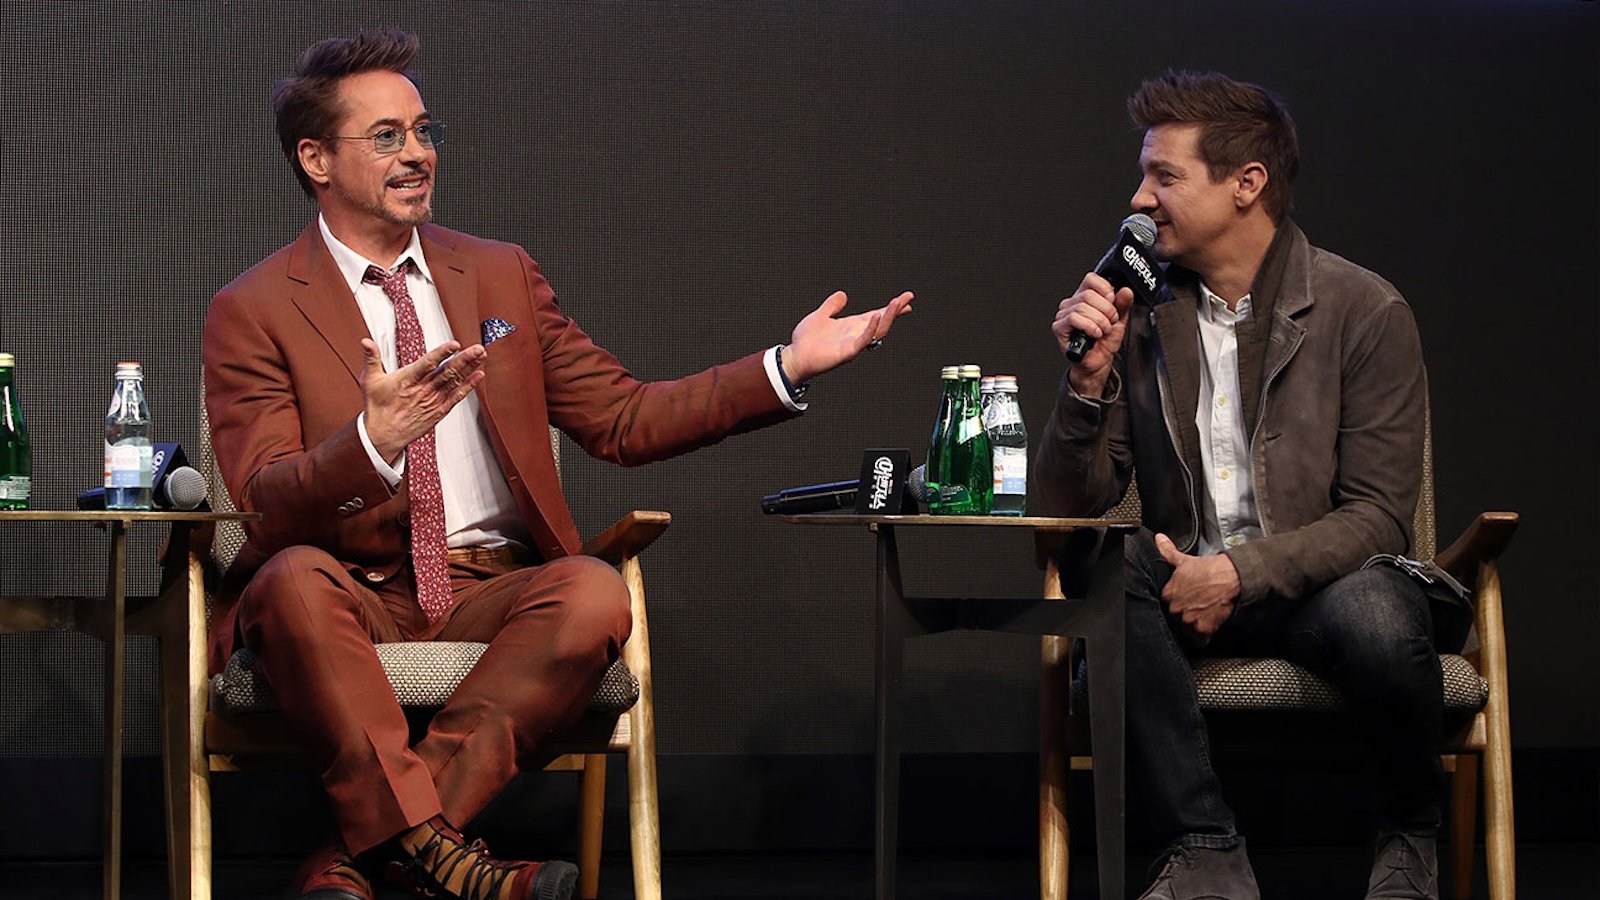 Robert Downey Jr. pazzo di gioia per il recupero di Jeremy Renner: 'I miracoli accadono'